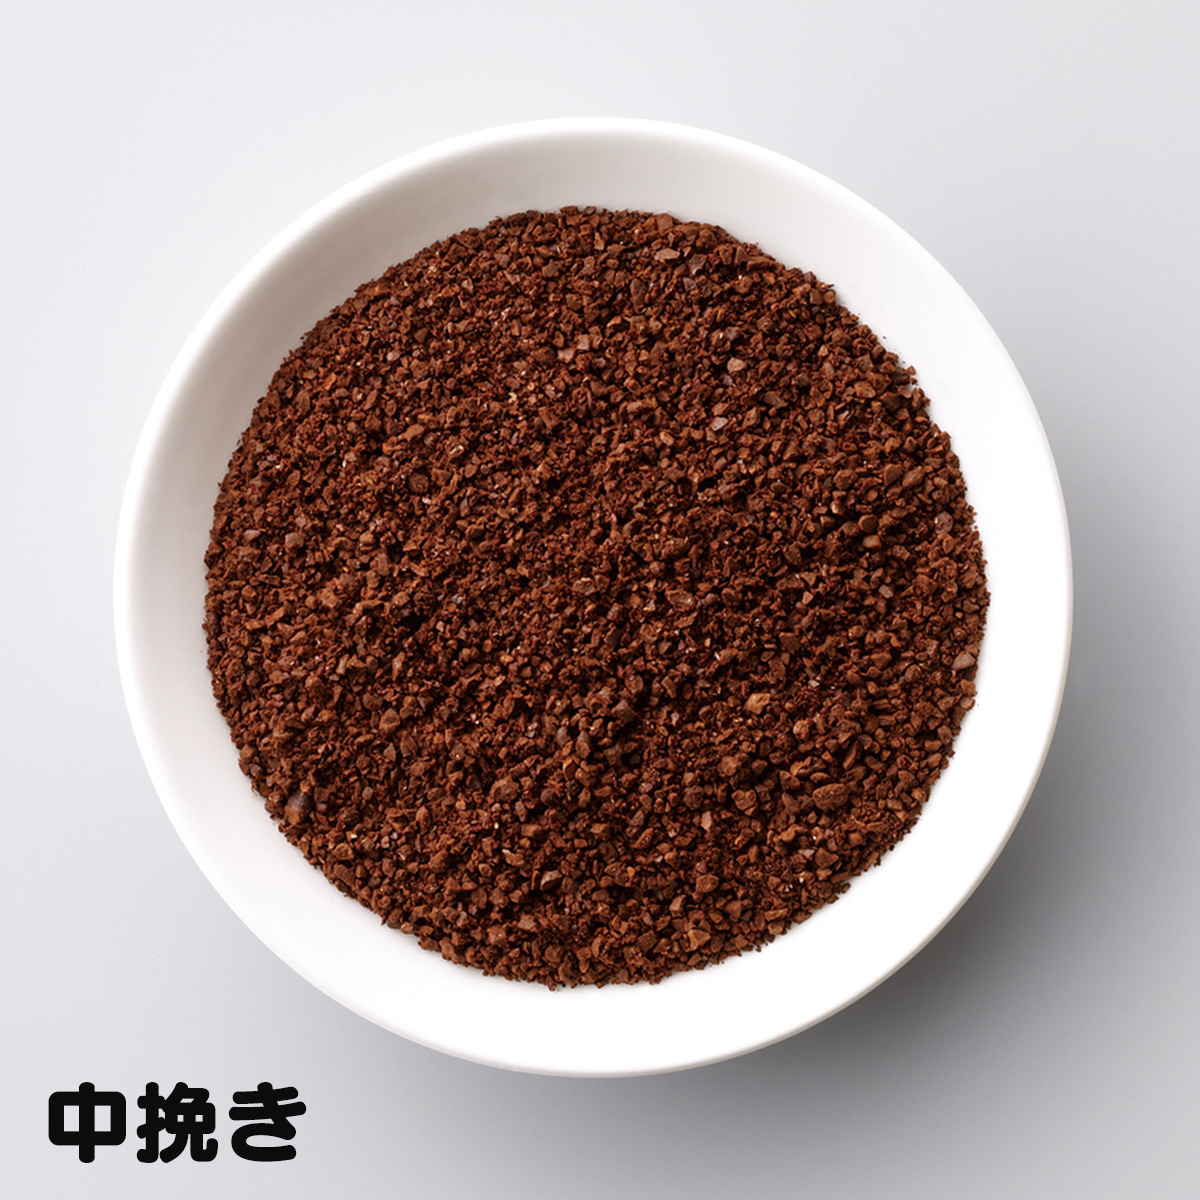 【ラッセルホブス】コーヒーグラインダー(電動ミル) : ブラック